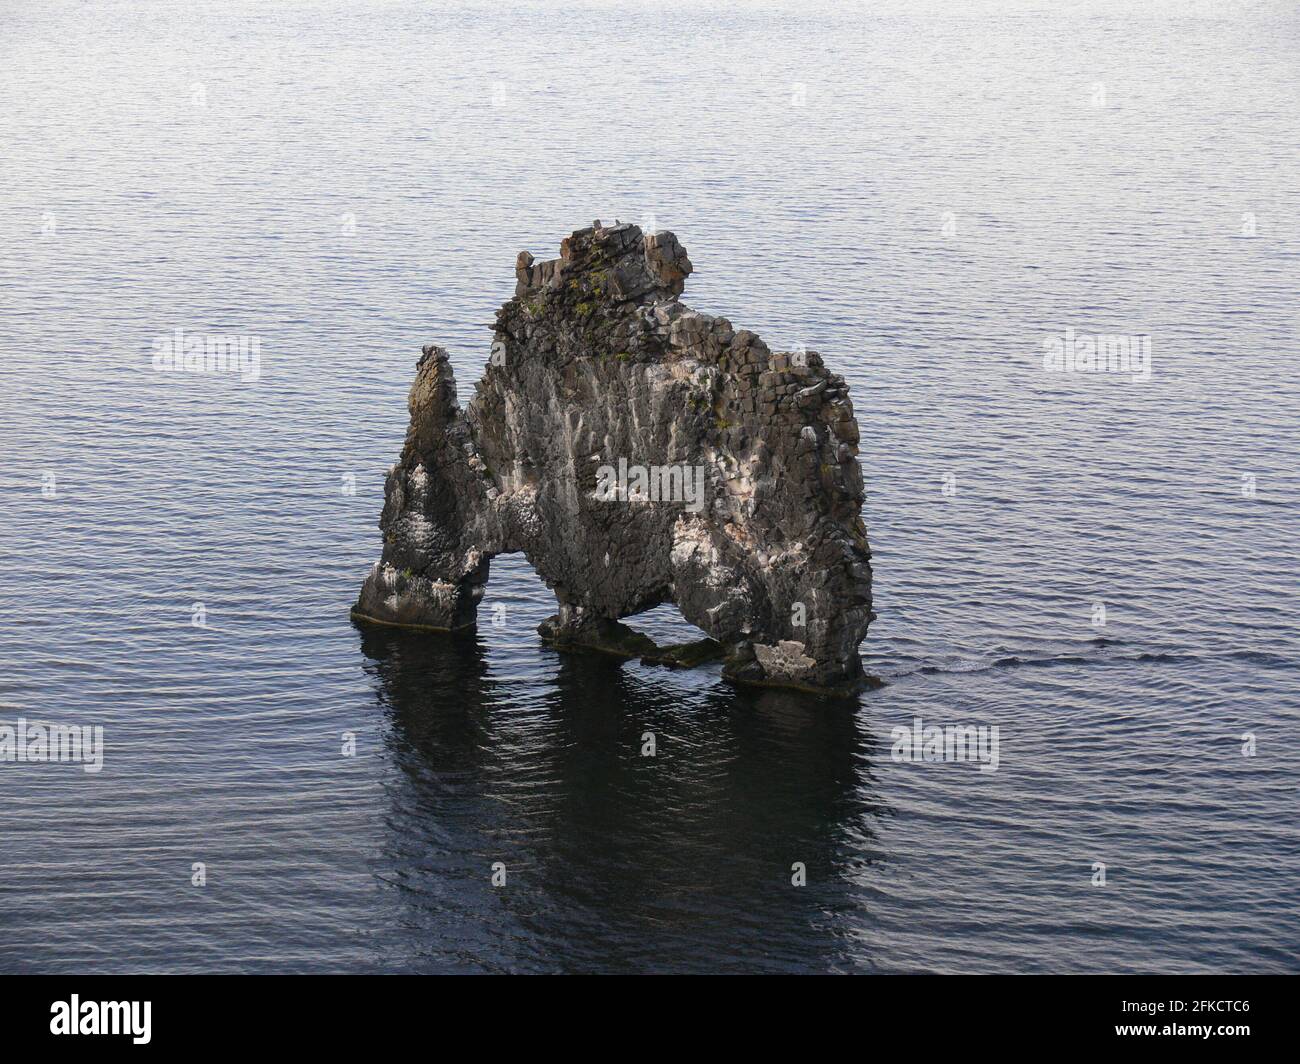 La formation de roche islandaise Hvitserkur ressemble à un dragon buvant qui est debout dans la mer Banque D'Images